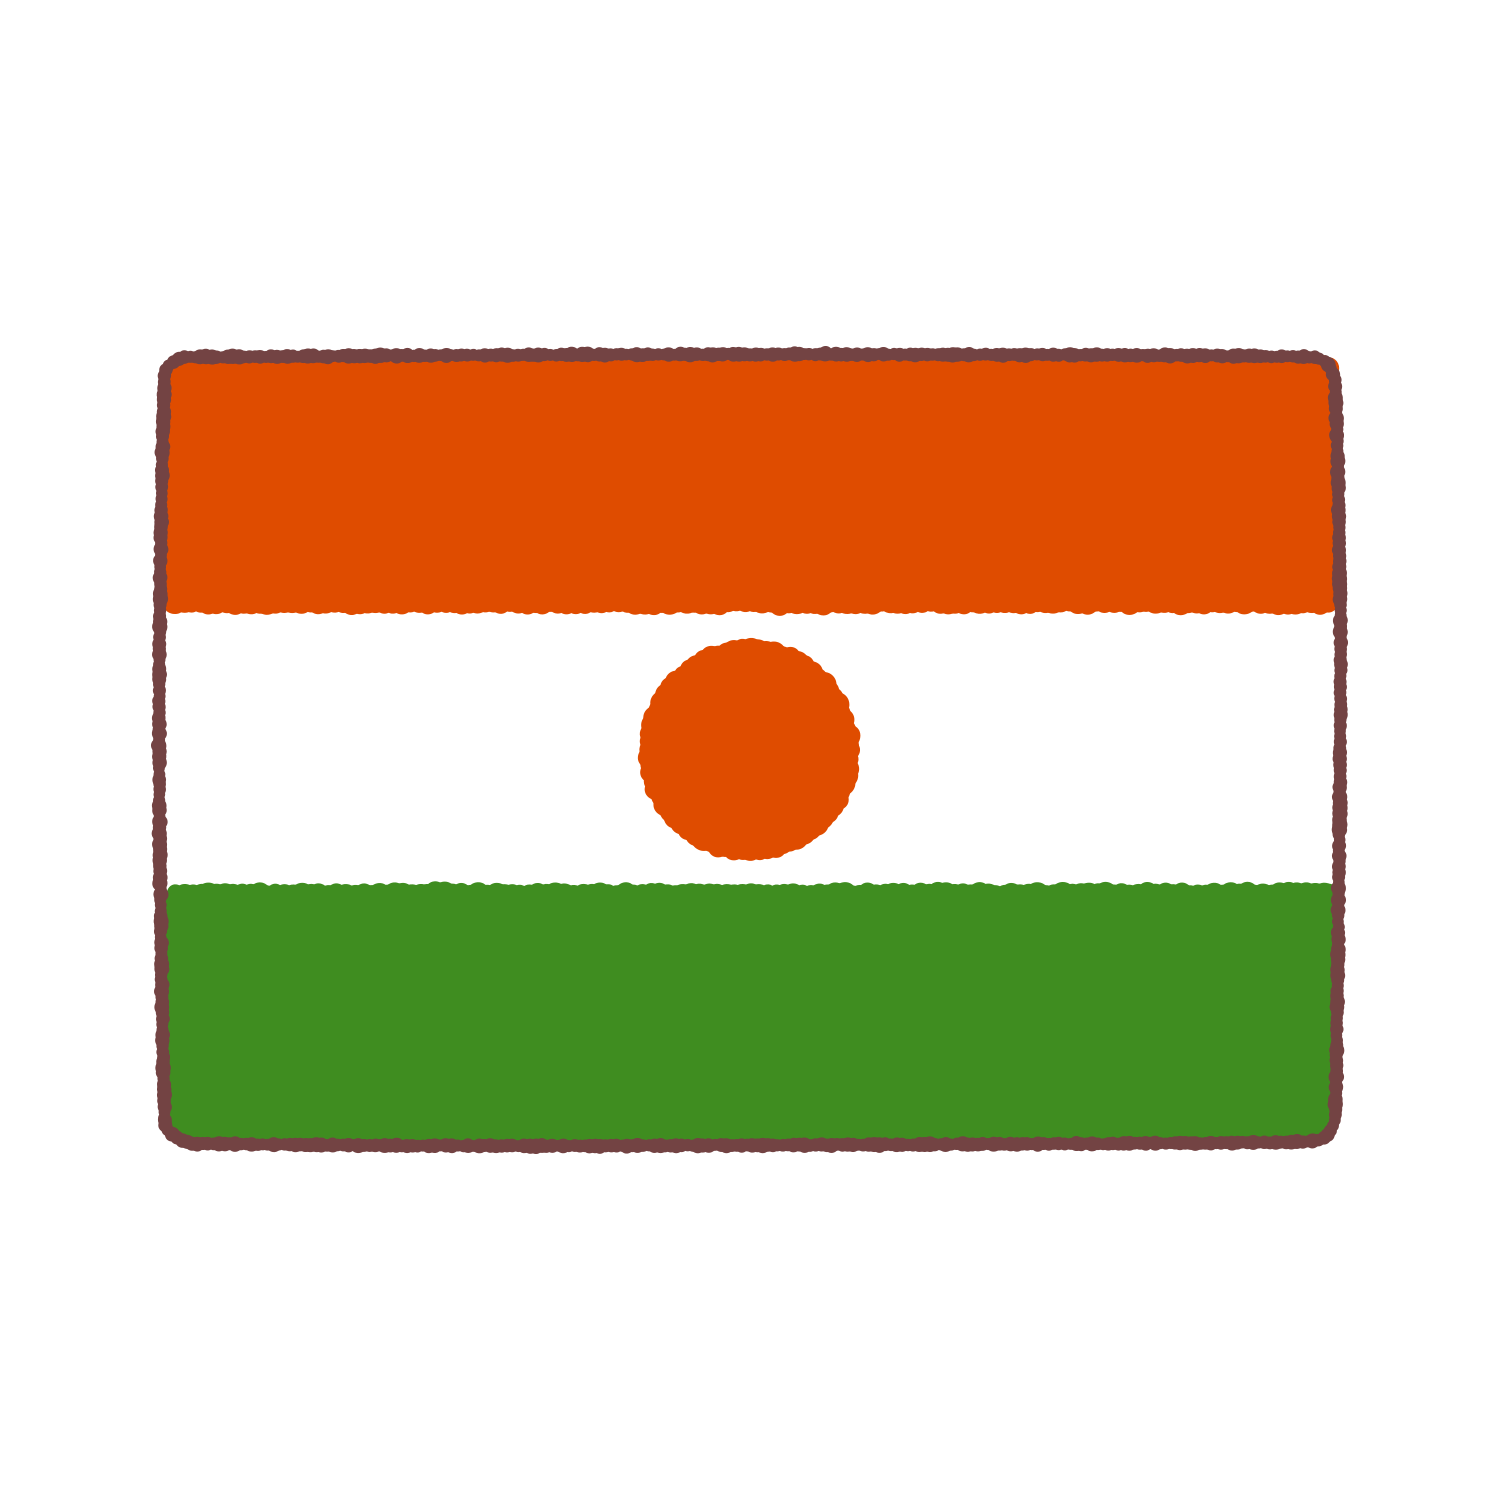 ニジェール国旗のイラスト